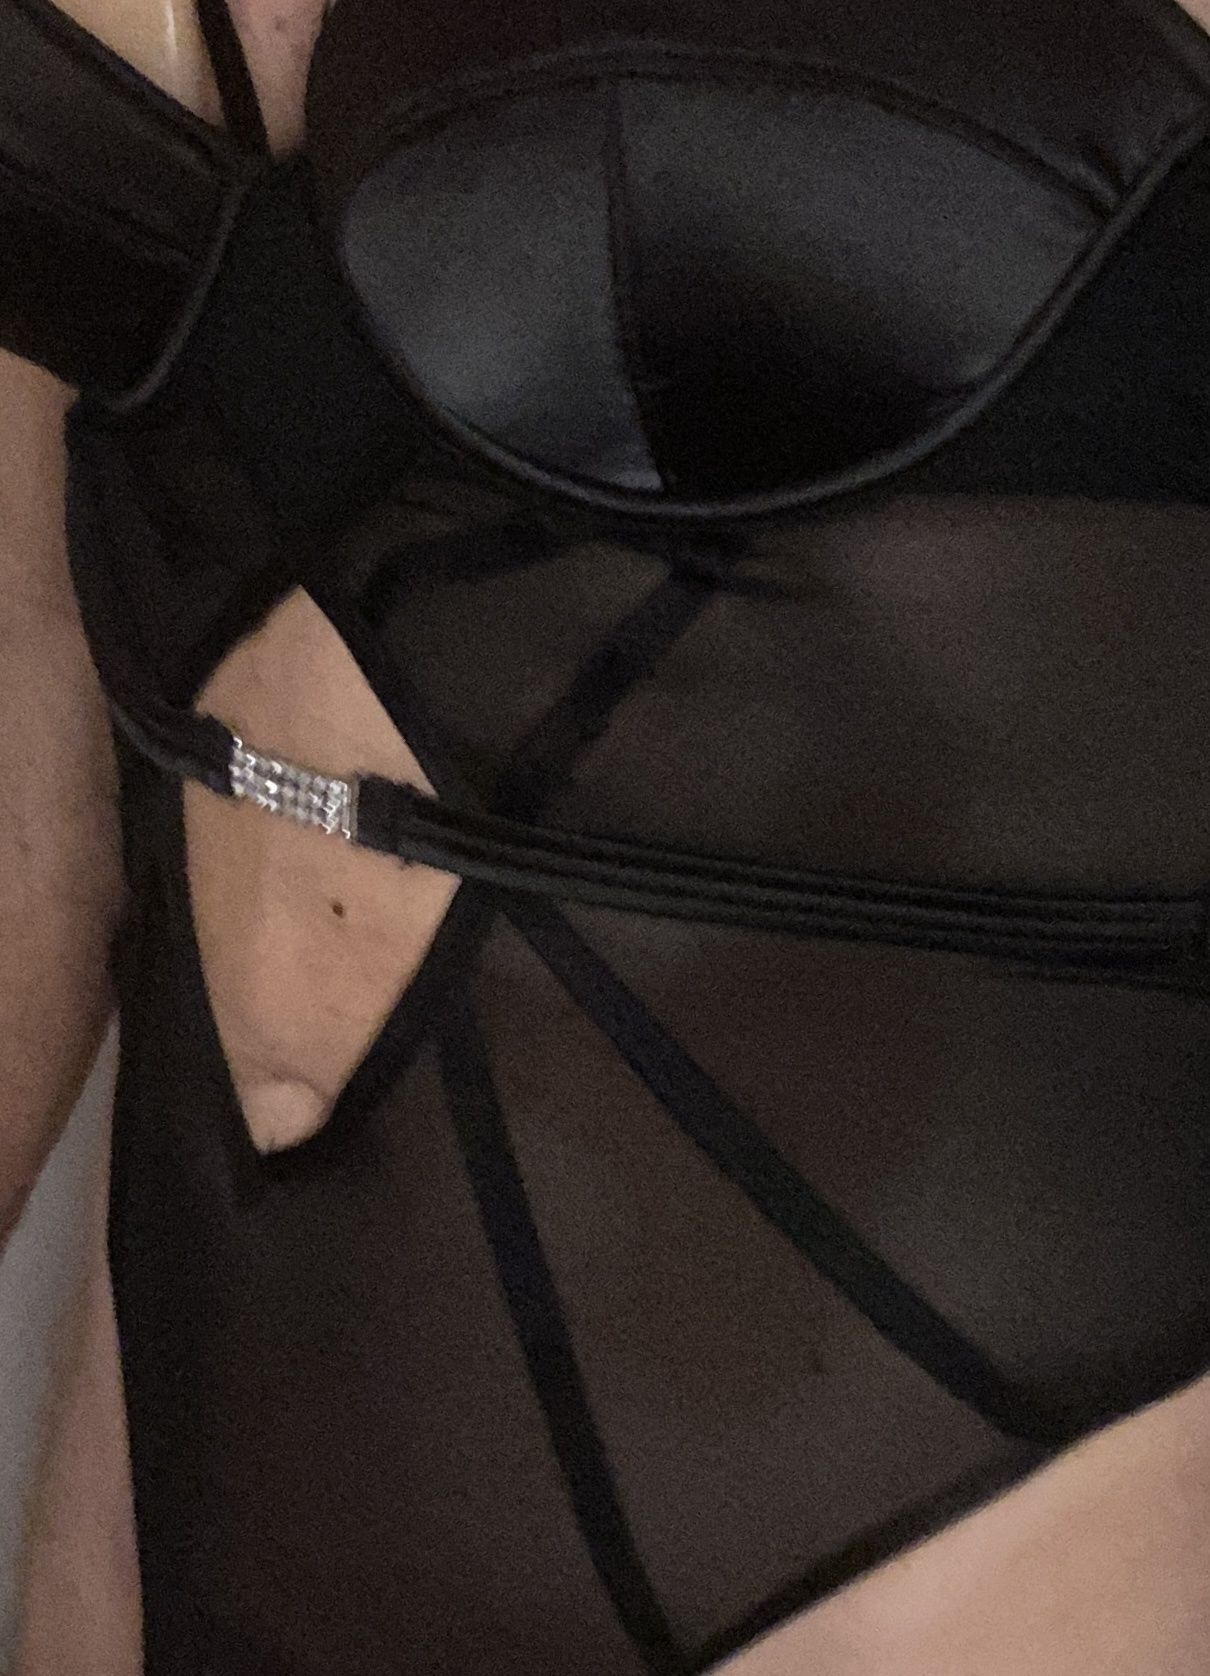 New black lingerie try on #5